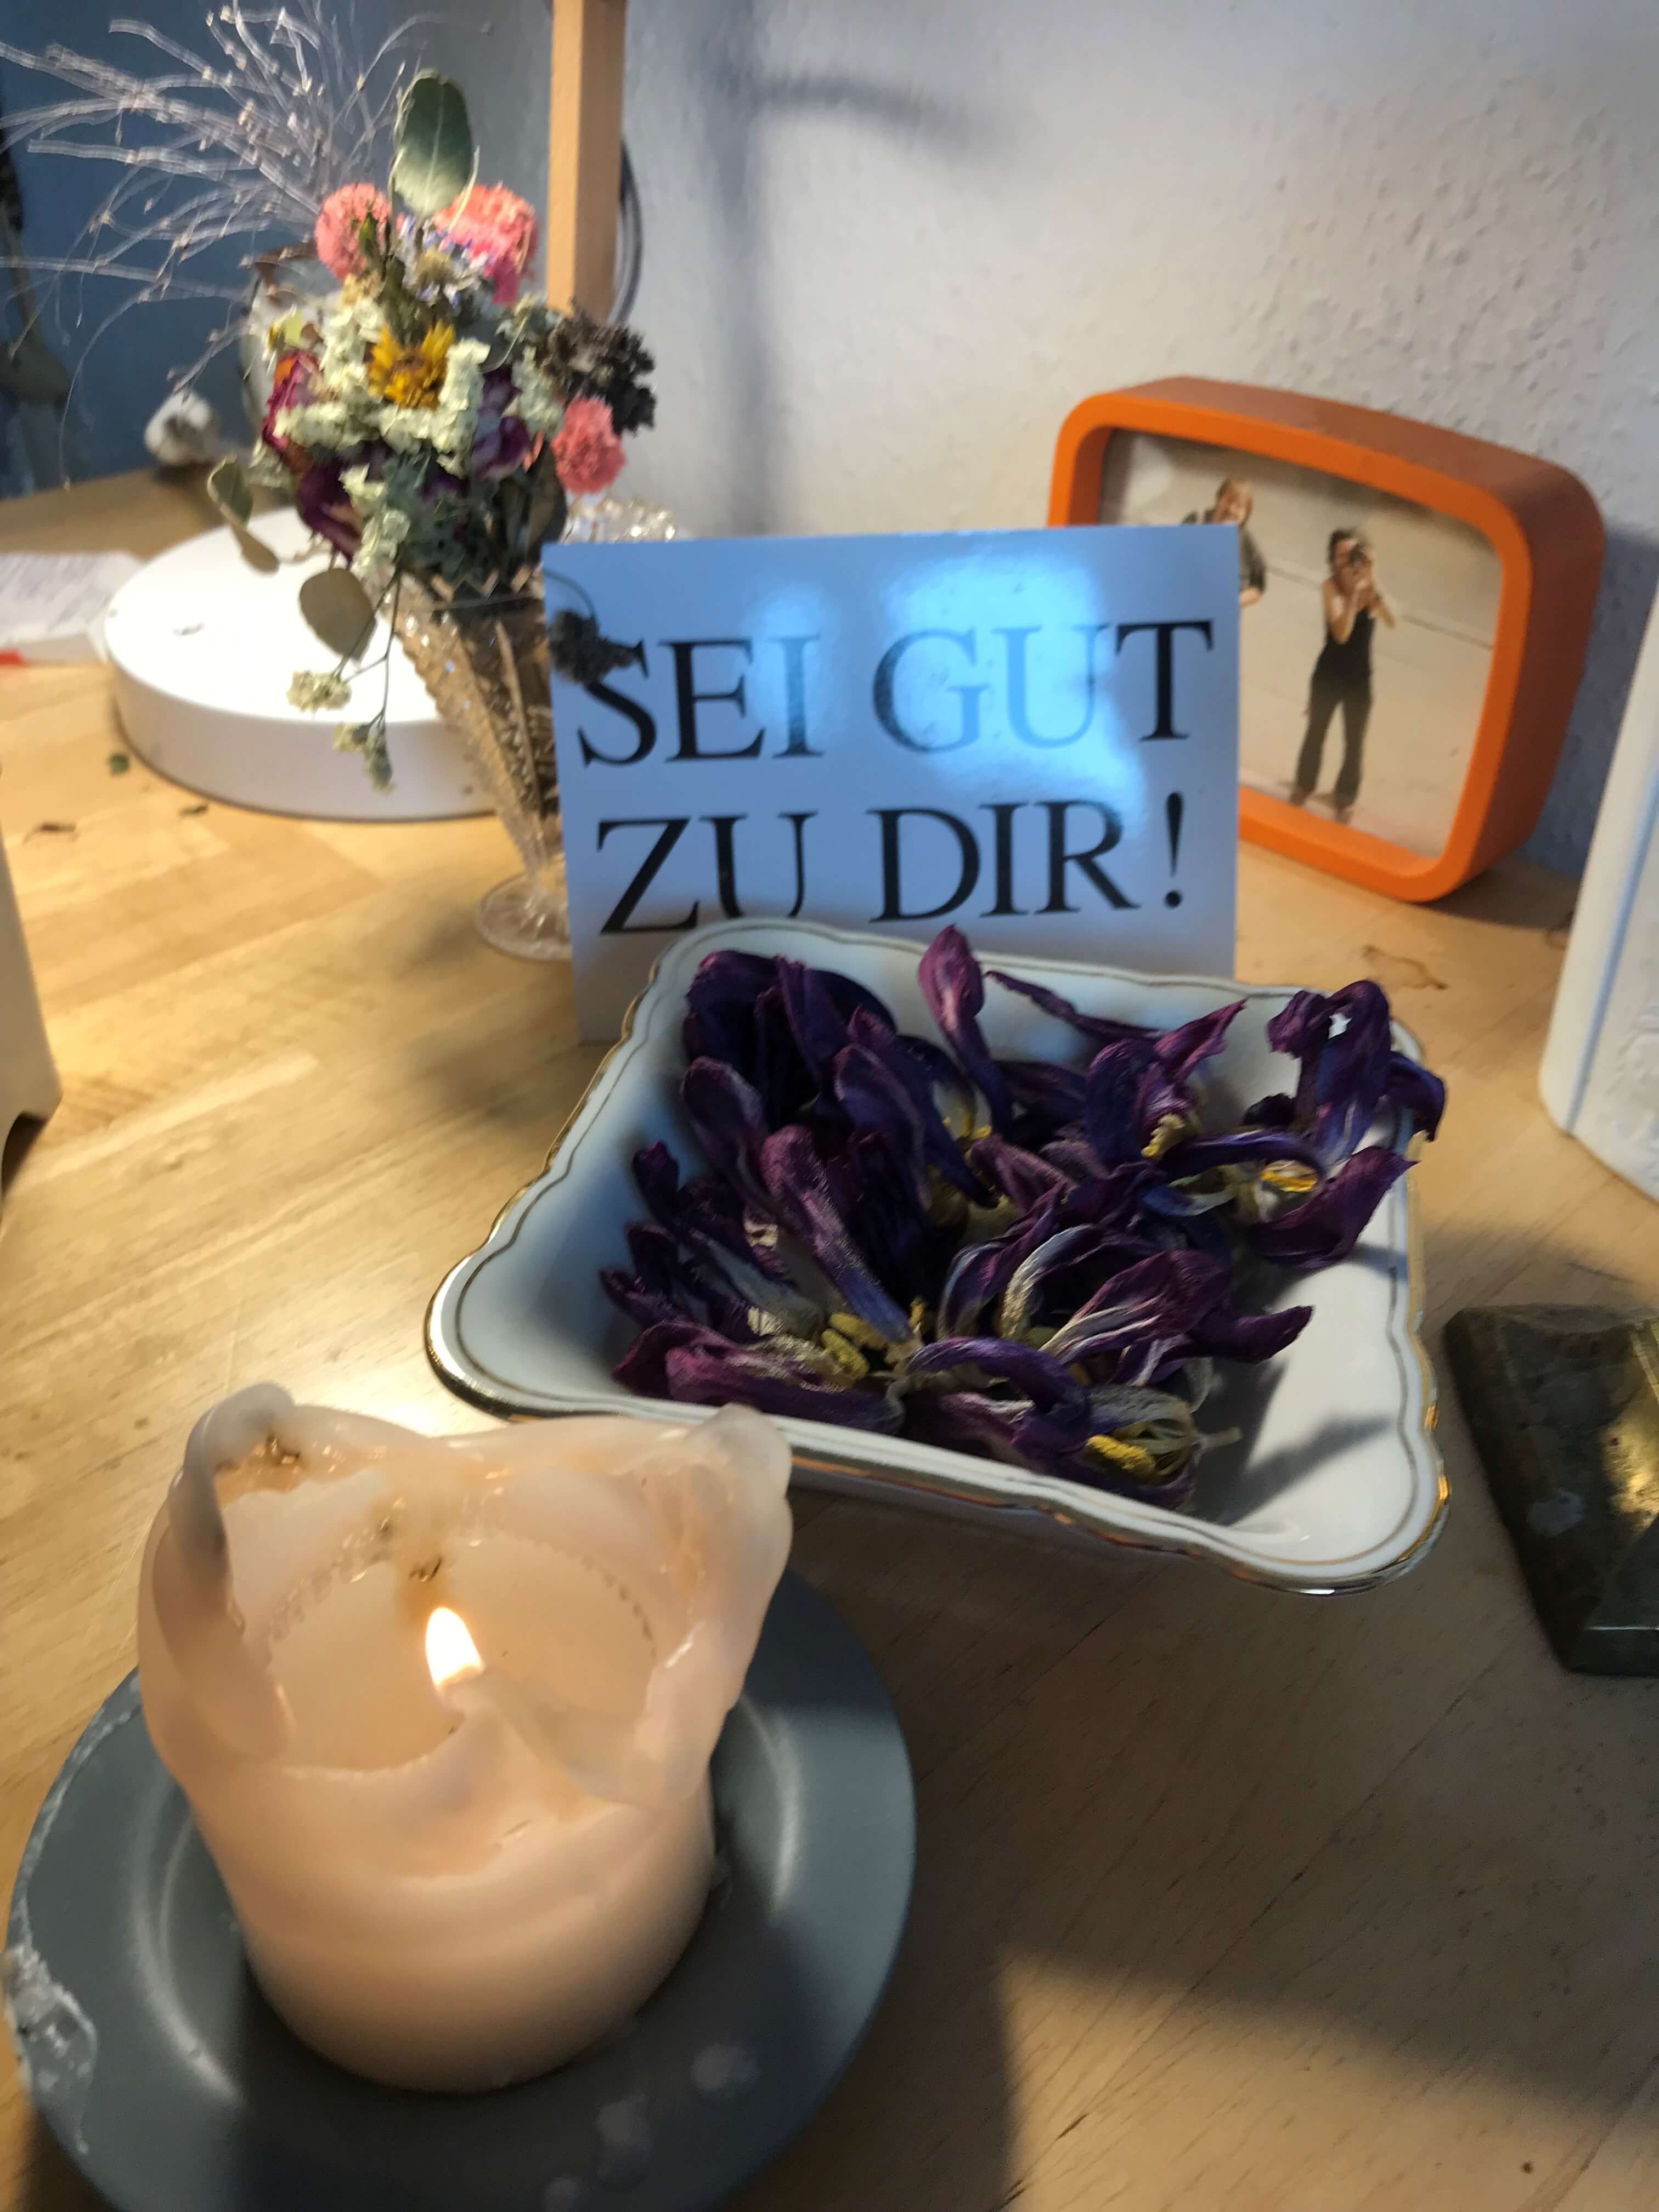 Brennende Kerze neben getrockneten Blüten und einer Postkarte mit den Worten "Sei gut zu dir!"